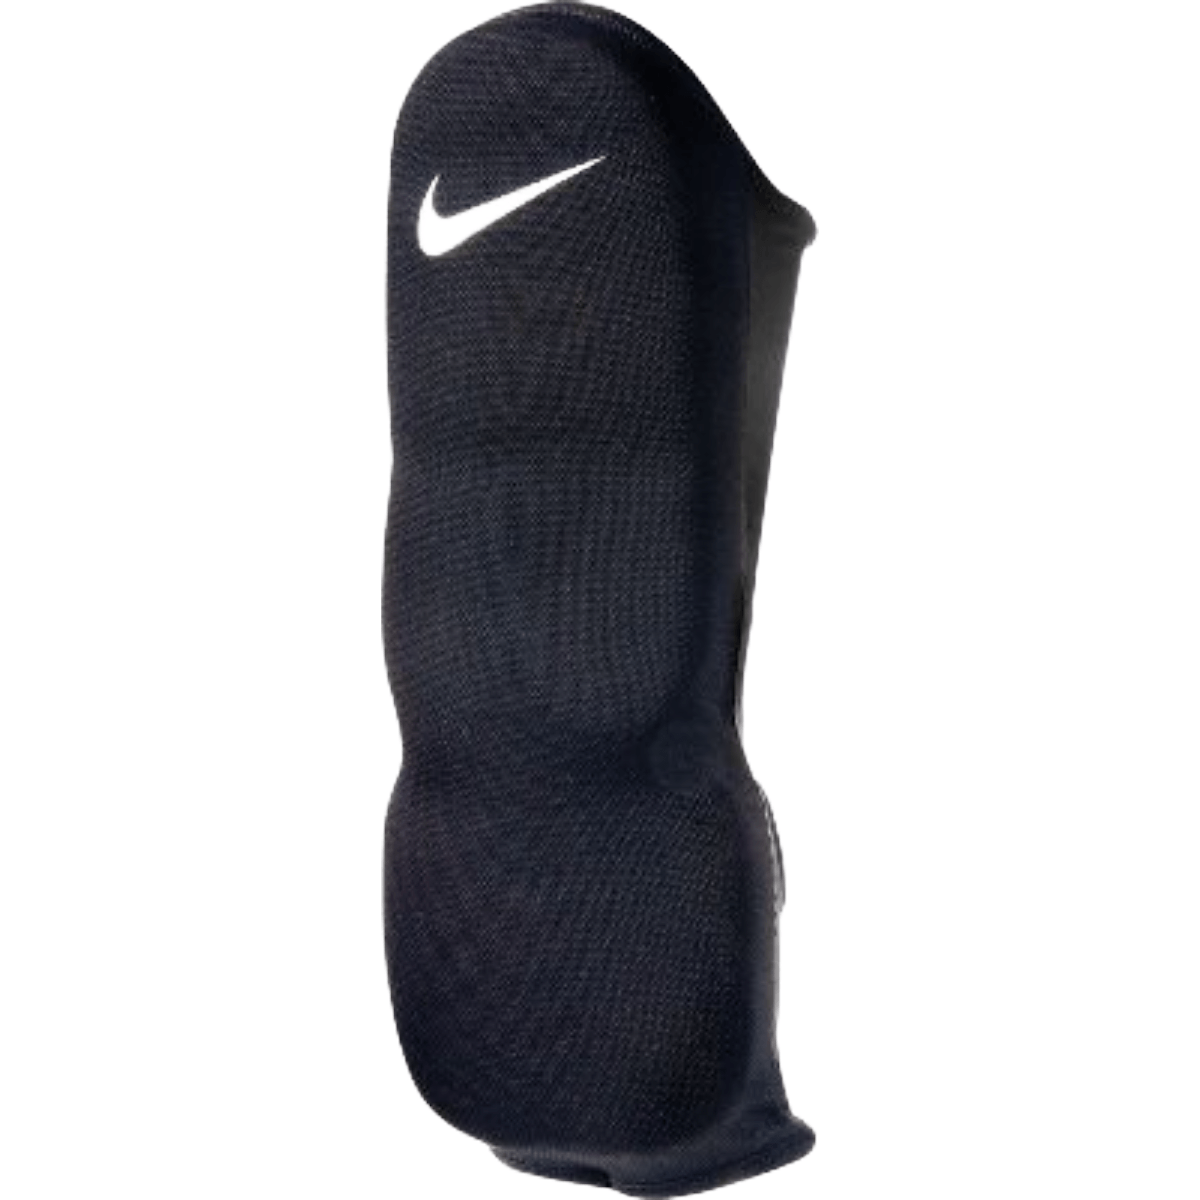 Nike Football Forearm / Hand Pad - Youth - Bobwards.com